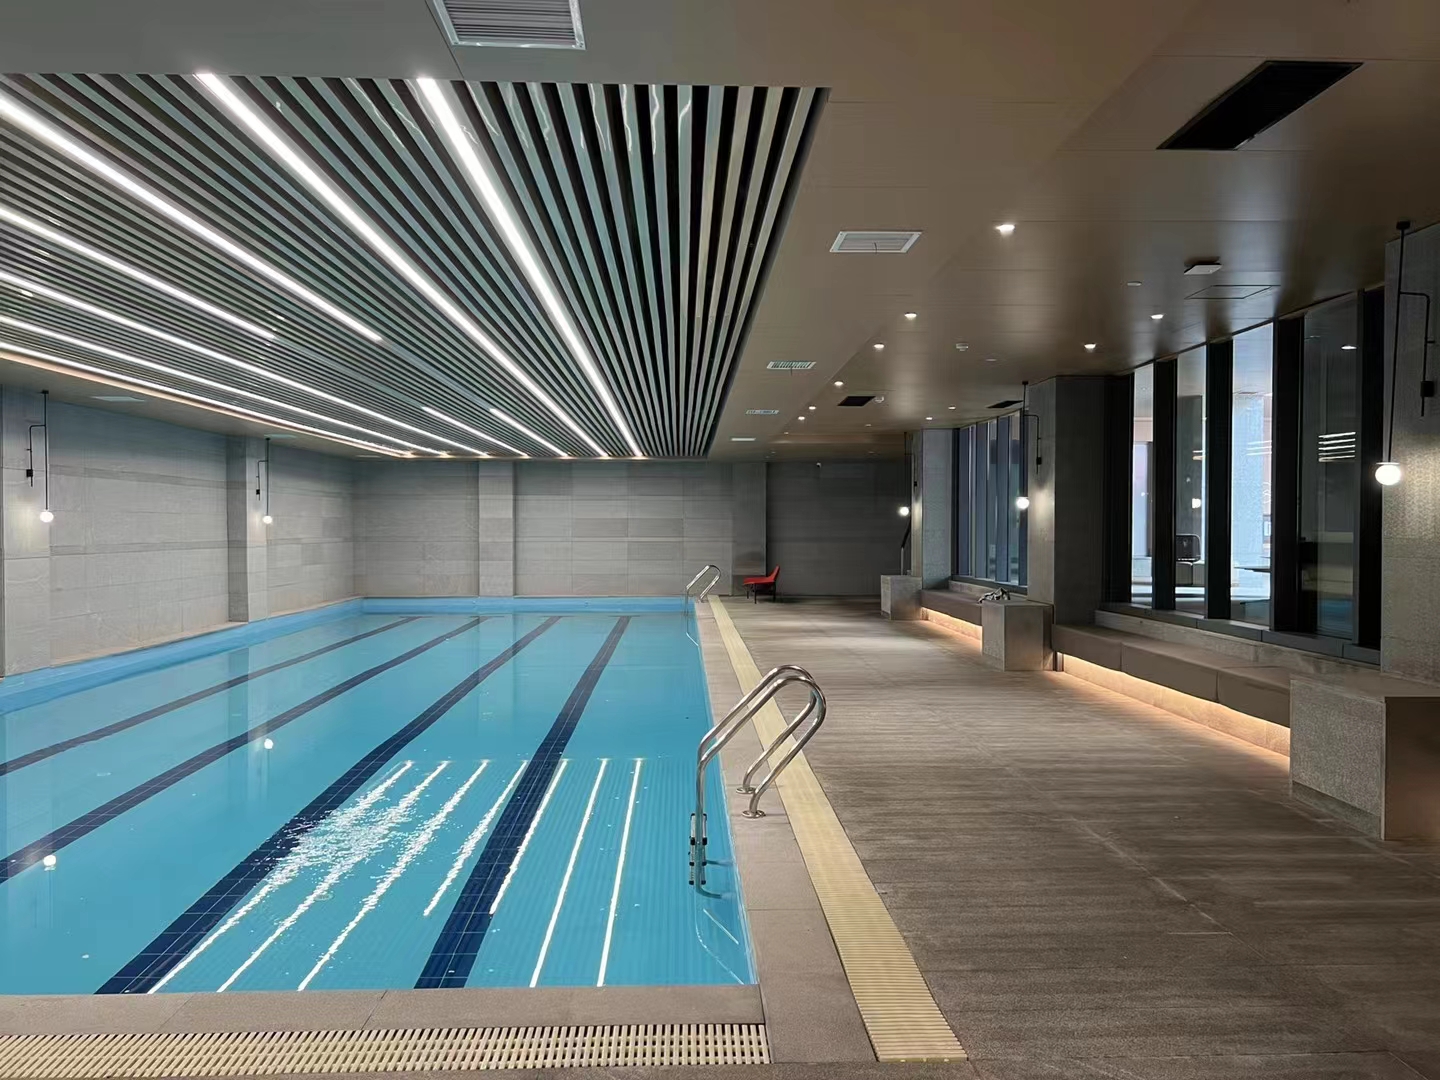 来宾恒温泳池设备厂家 游泳池建造工程队 施工方案